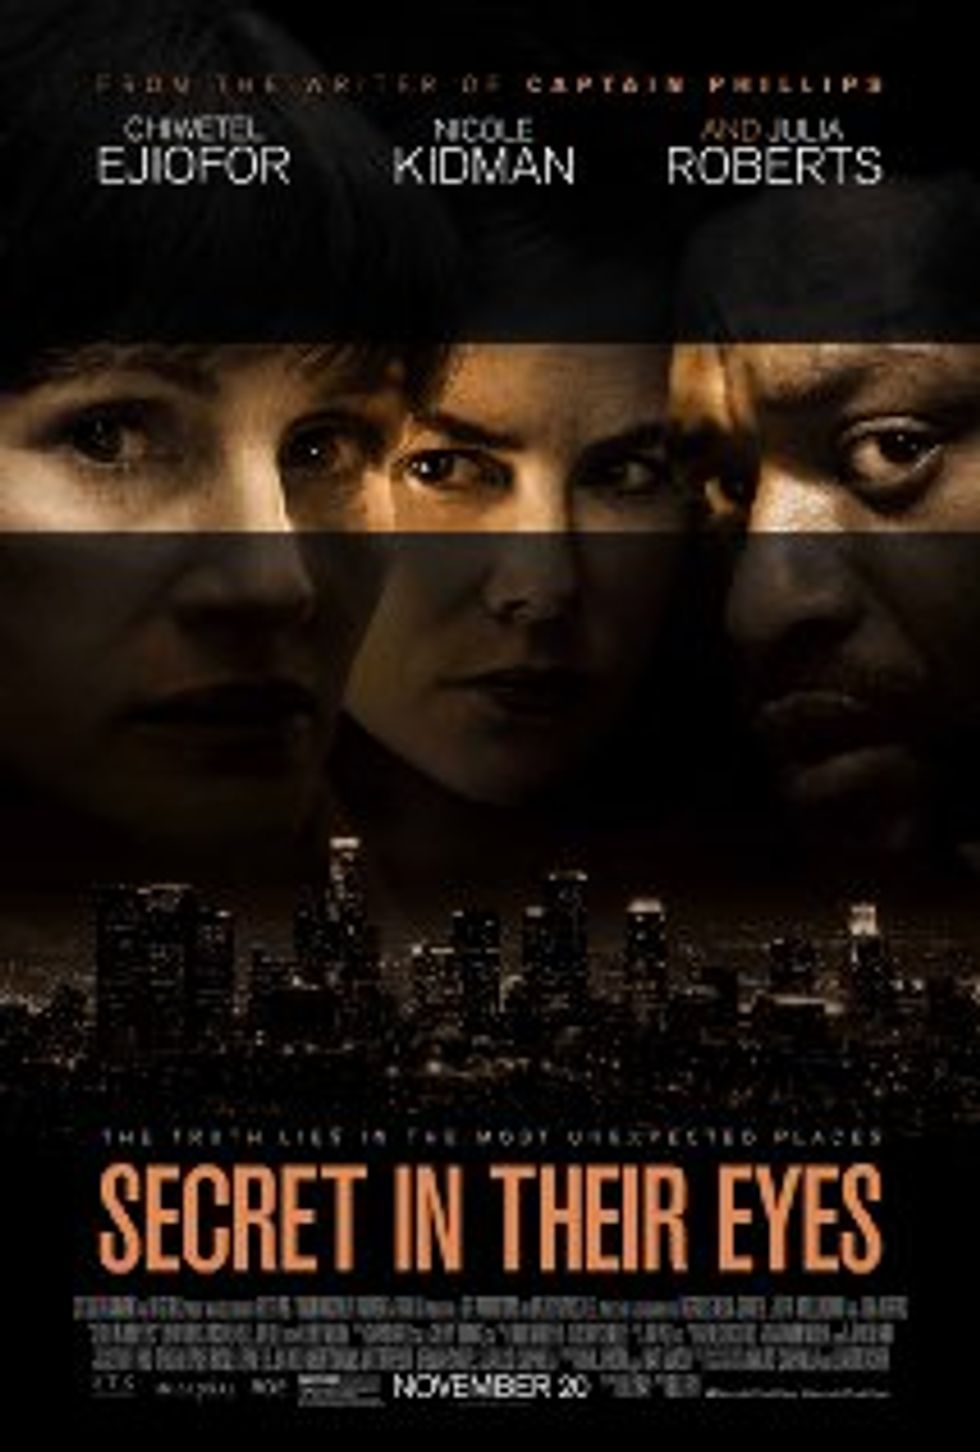 Secret in Their Eyes' is an Oscar-Worthy Treasure